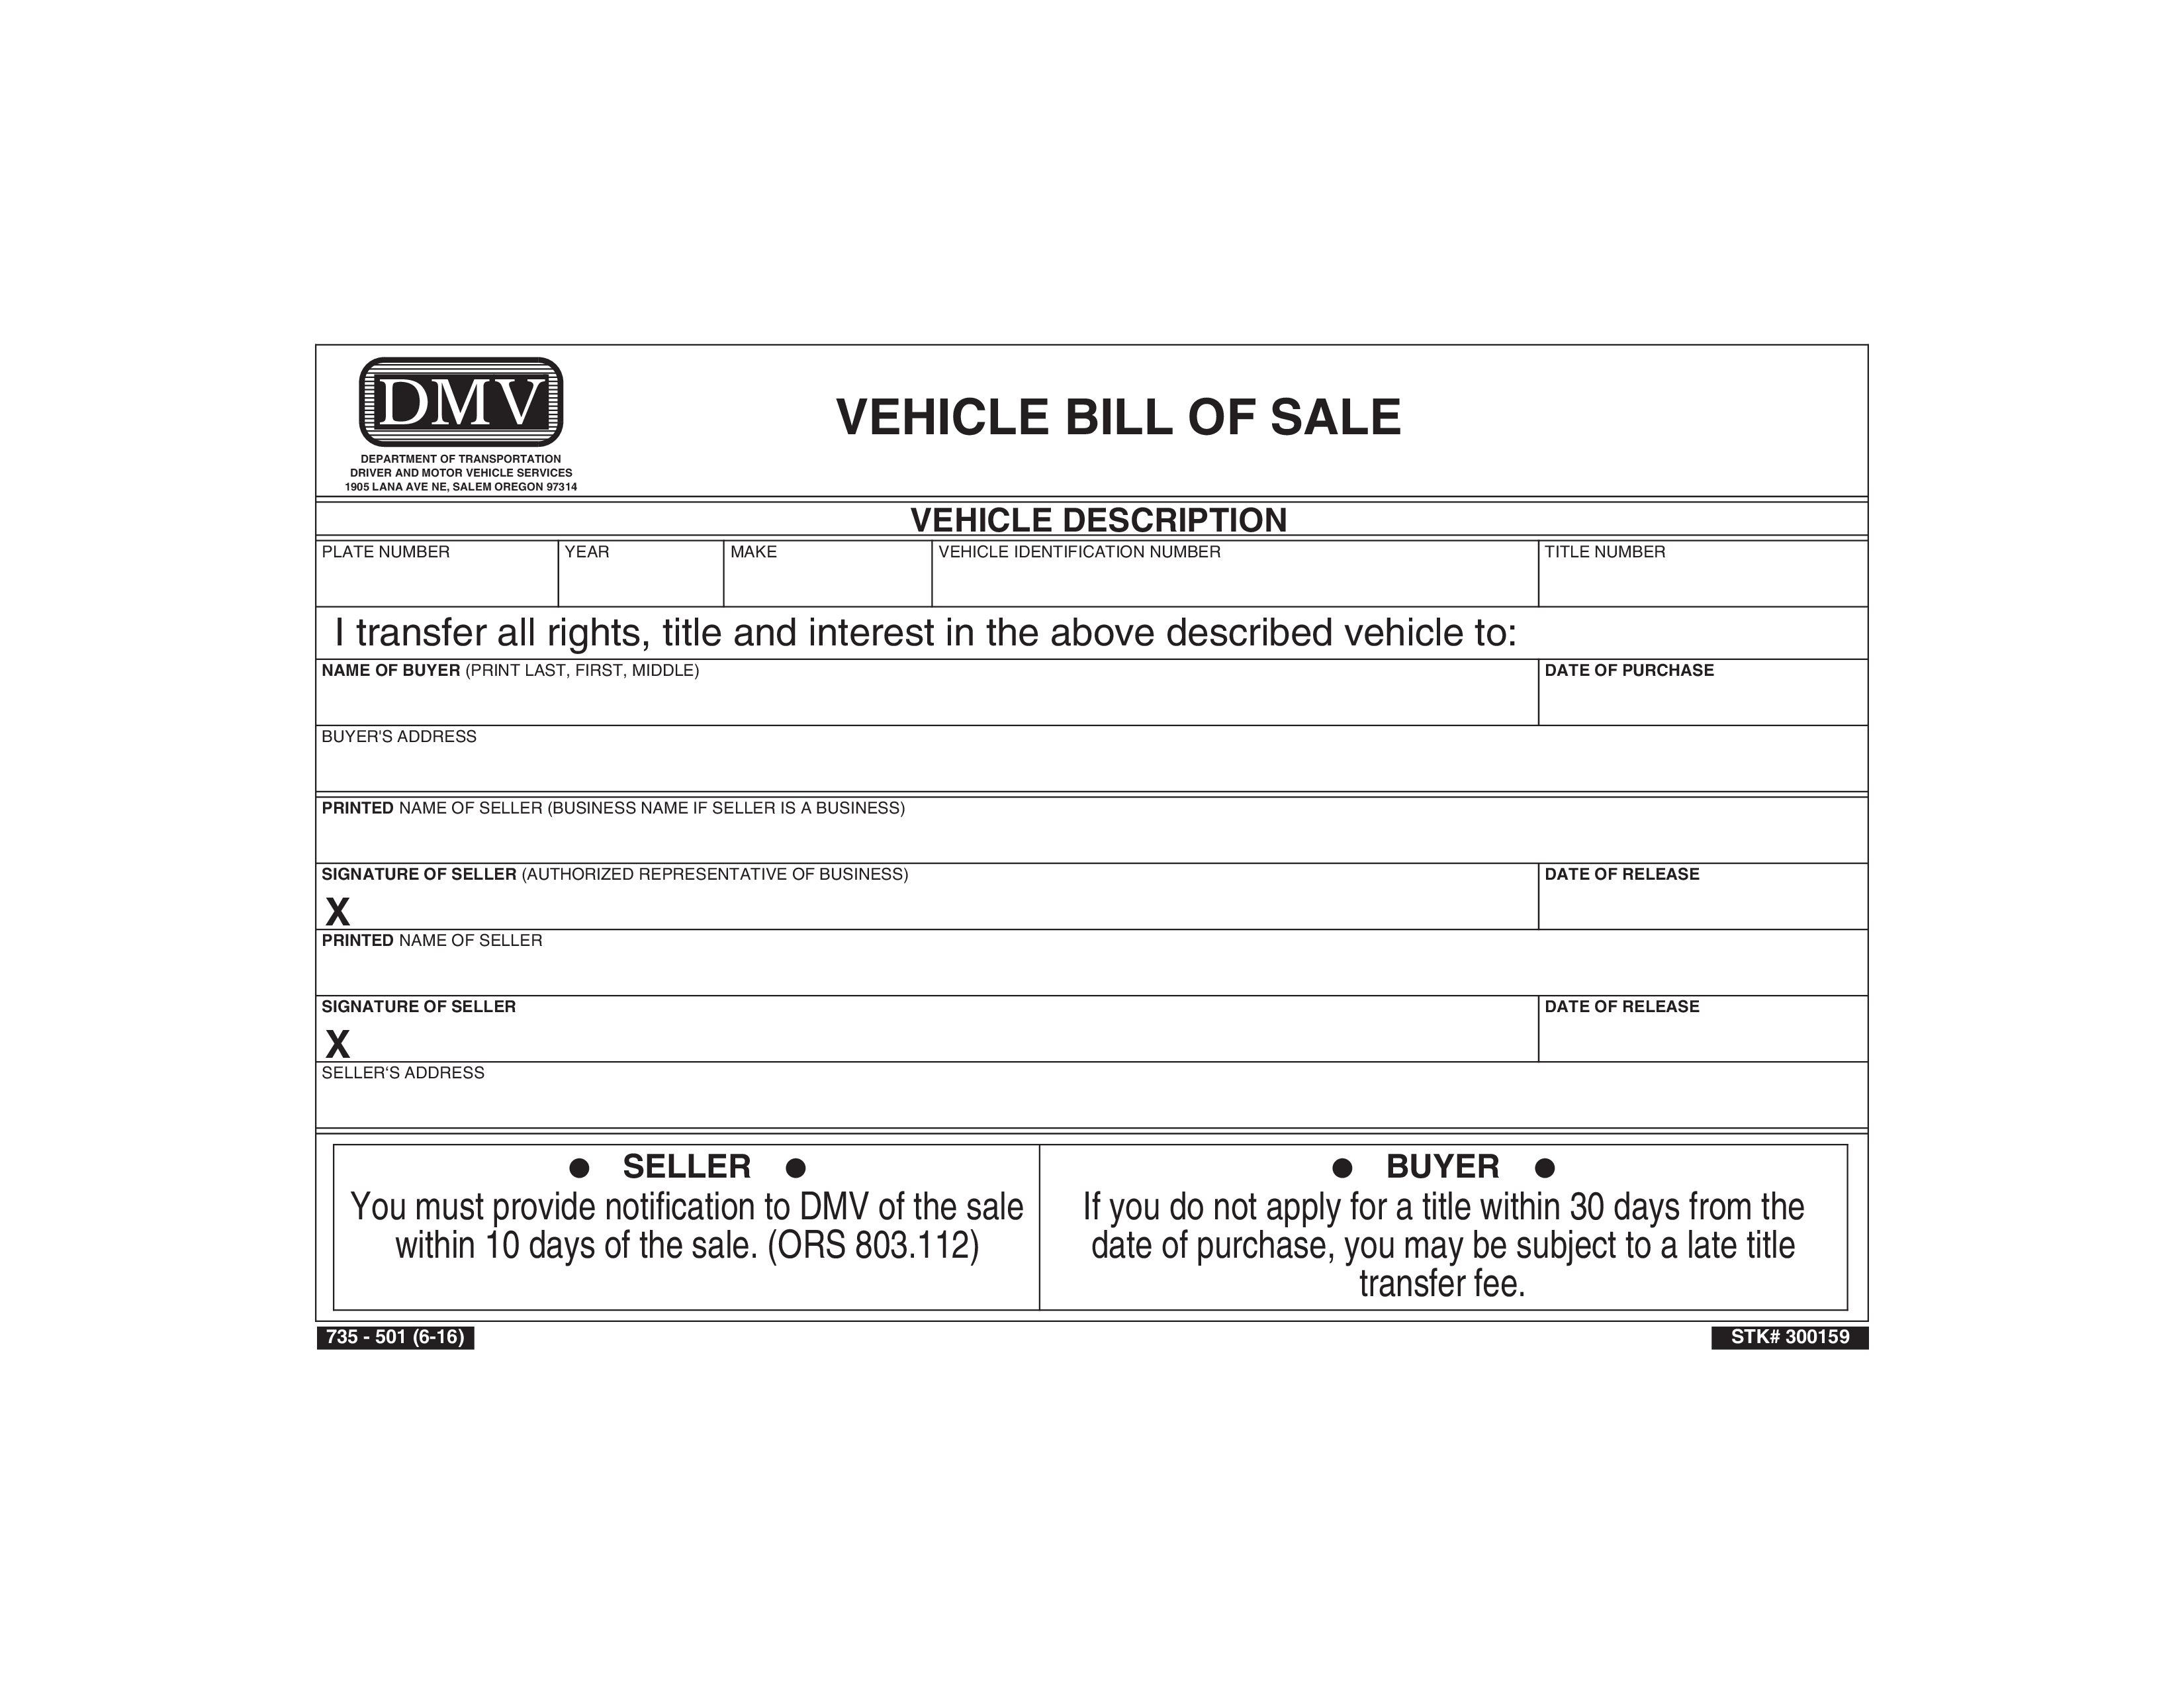 used vehicle bill of sale plantilla imagen principal